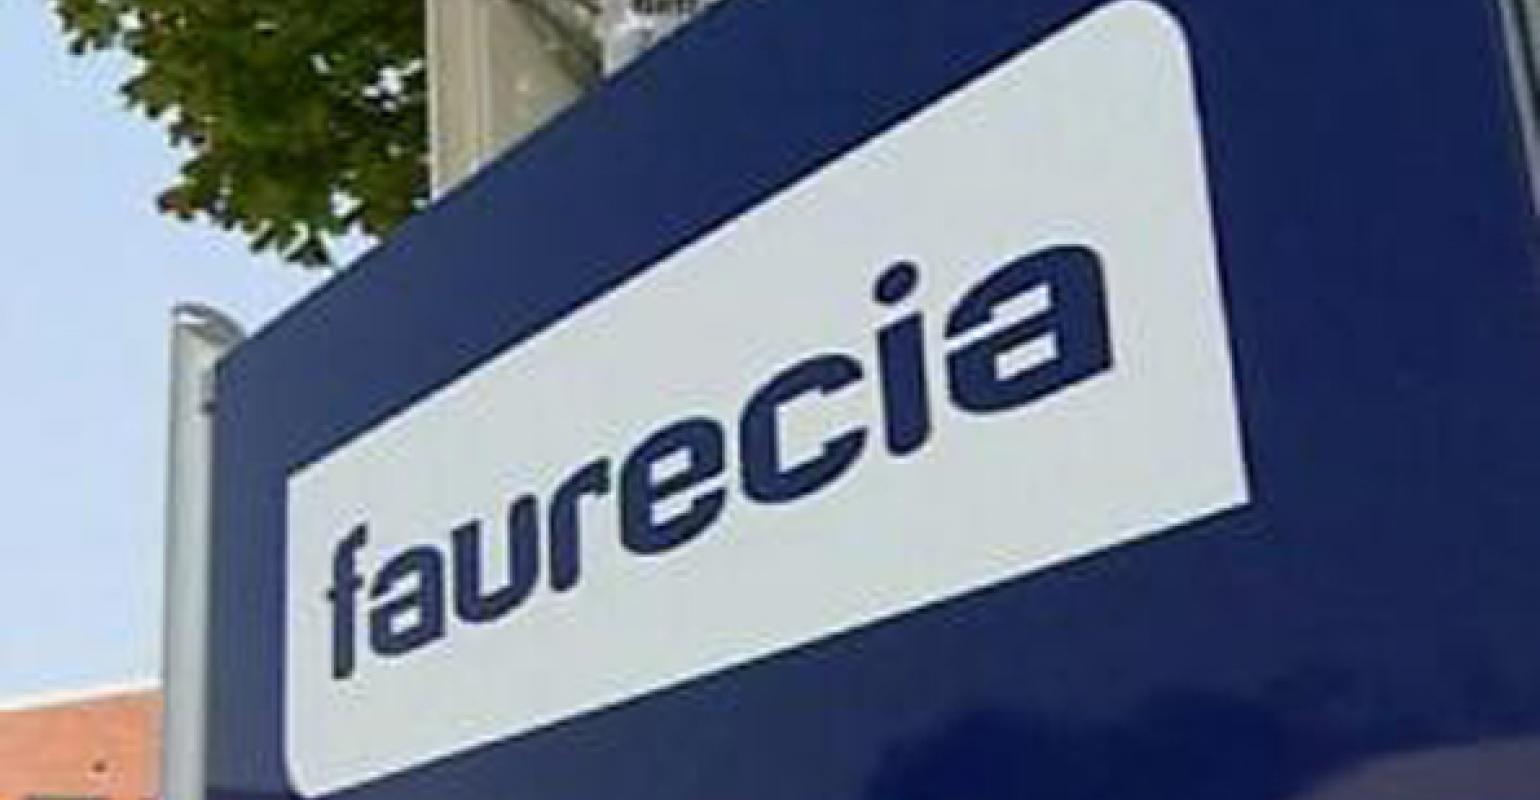 Faurecia Logo - Auto Parts Supplier Faurecia Will Cut 500 Jobs